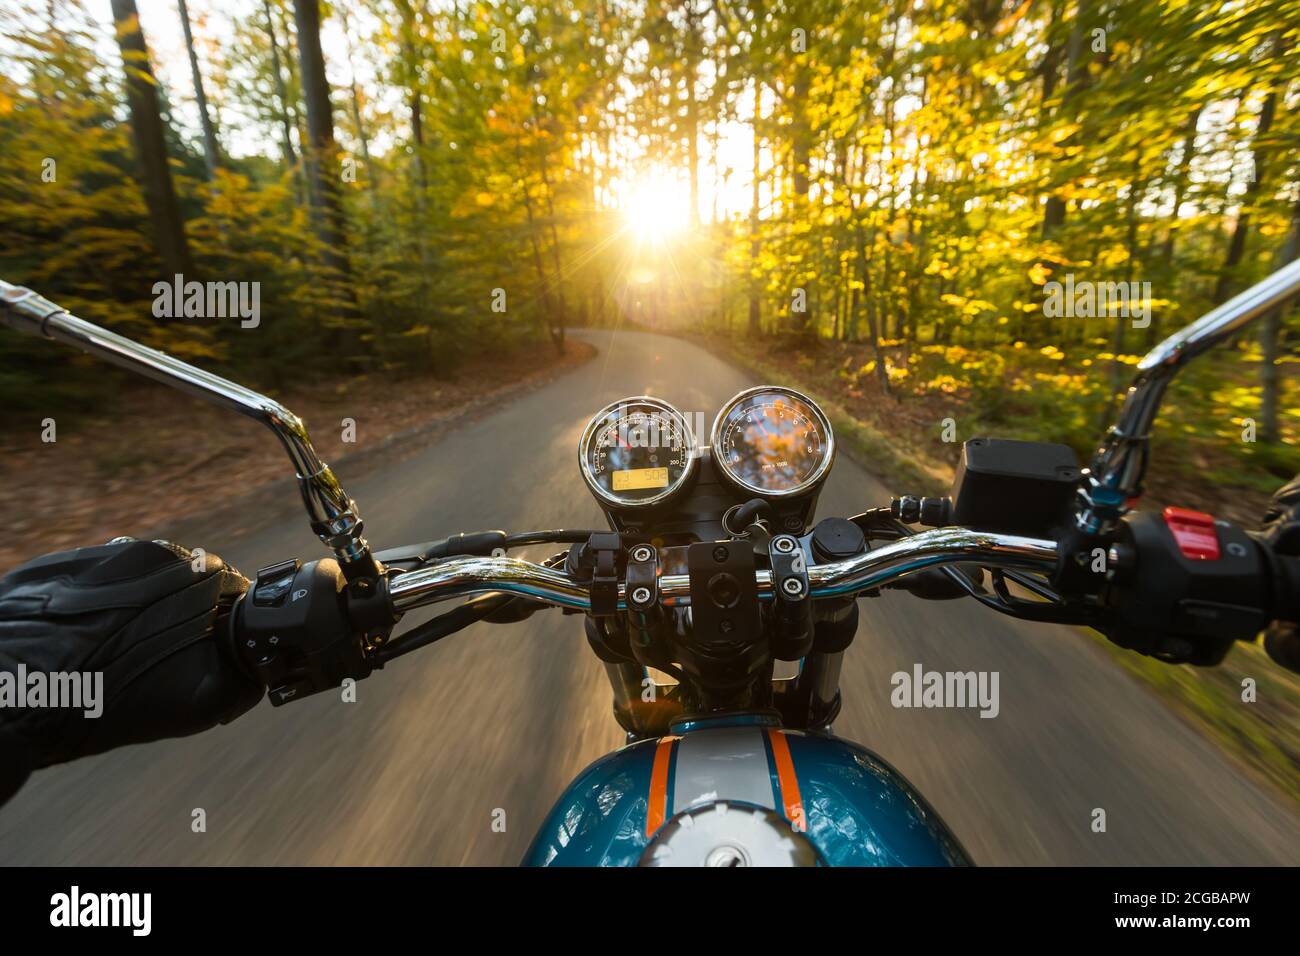 Vue du conducteur de moto de la perspective de la conduite dans le paysage de Foreste pendant lever du soleil Banque D'Images